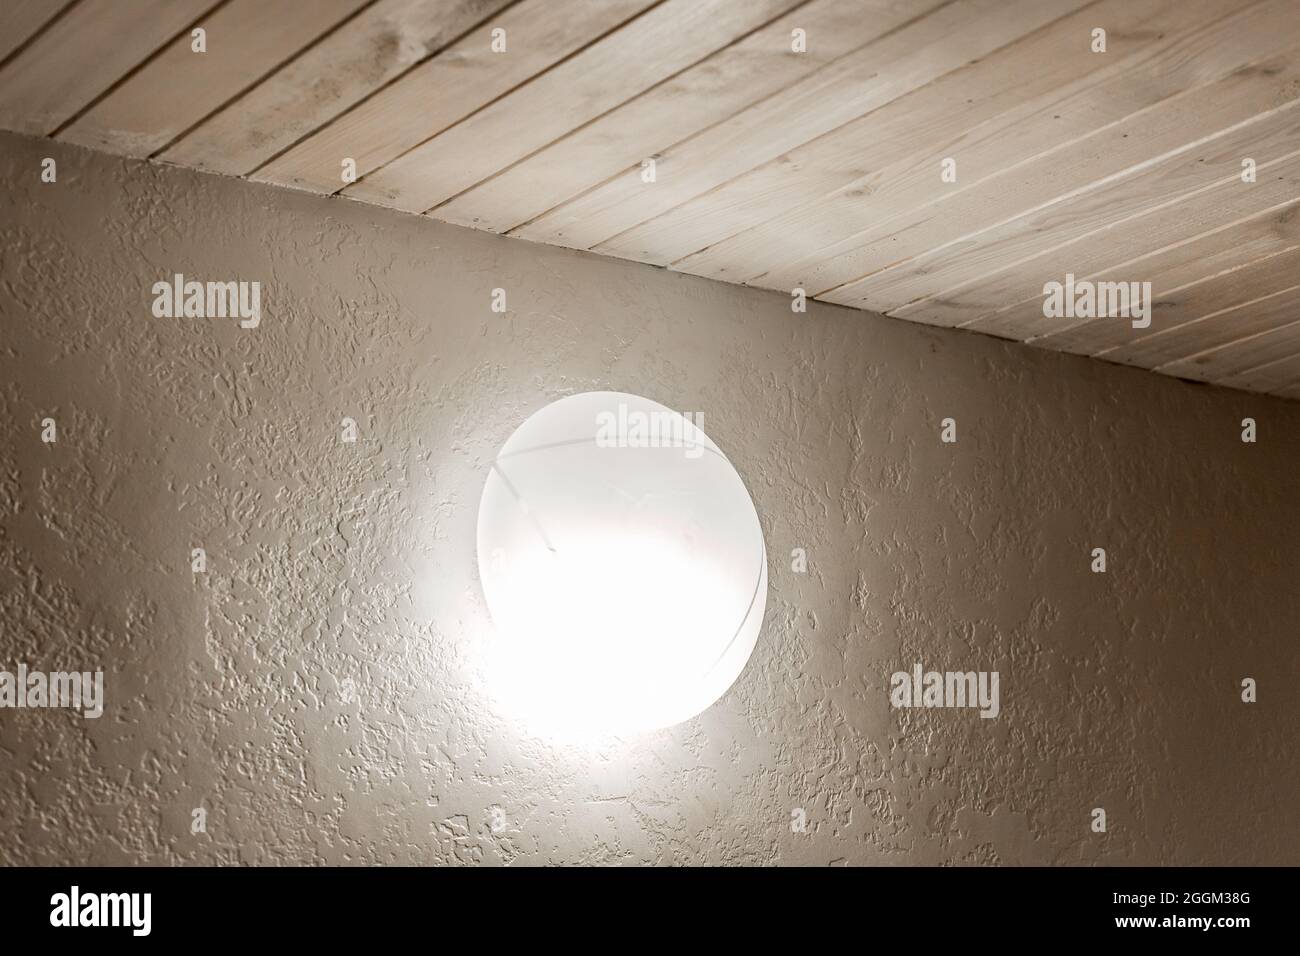 https://c8.alamy.com/compit/2ggm38g/lampada-a-luce-soffusa-sulla-parete-negli-interni-moderni-dell-illuminazione-stile-stanza-2ggm38g.jpg